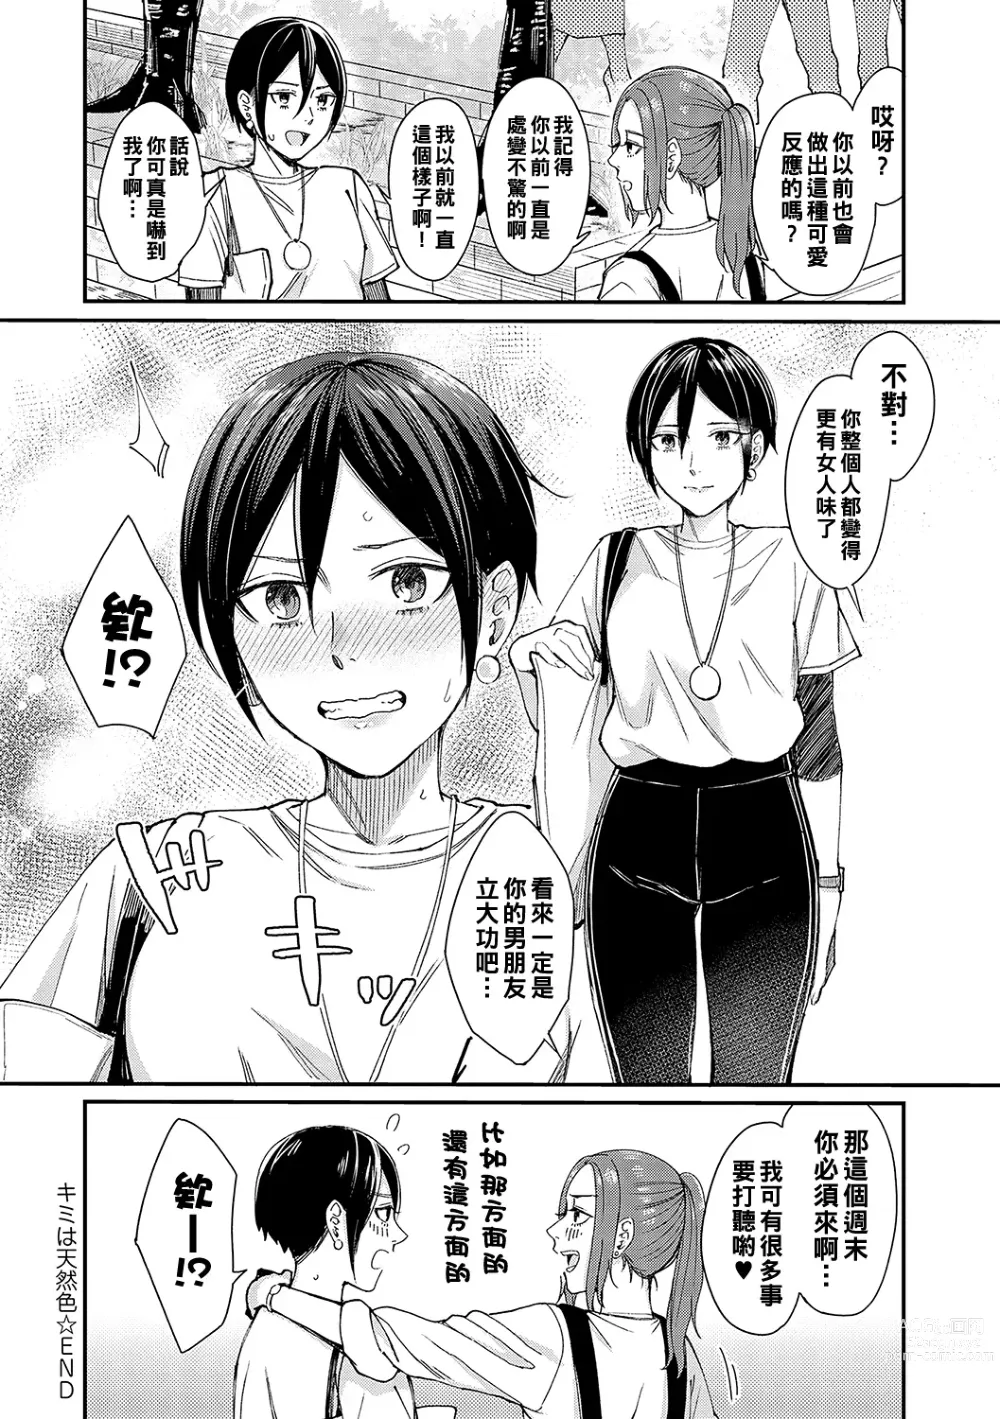 Page 32 of manga Kimi wa Tennenshoku